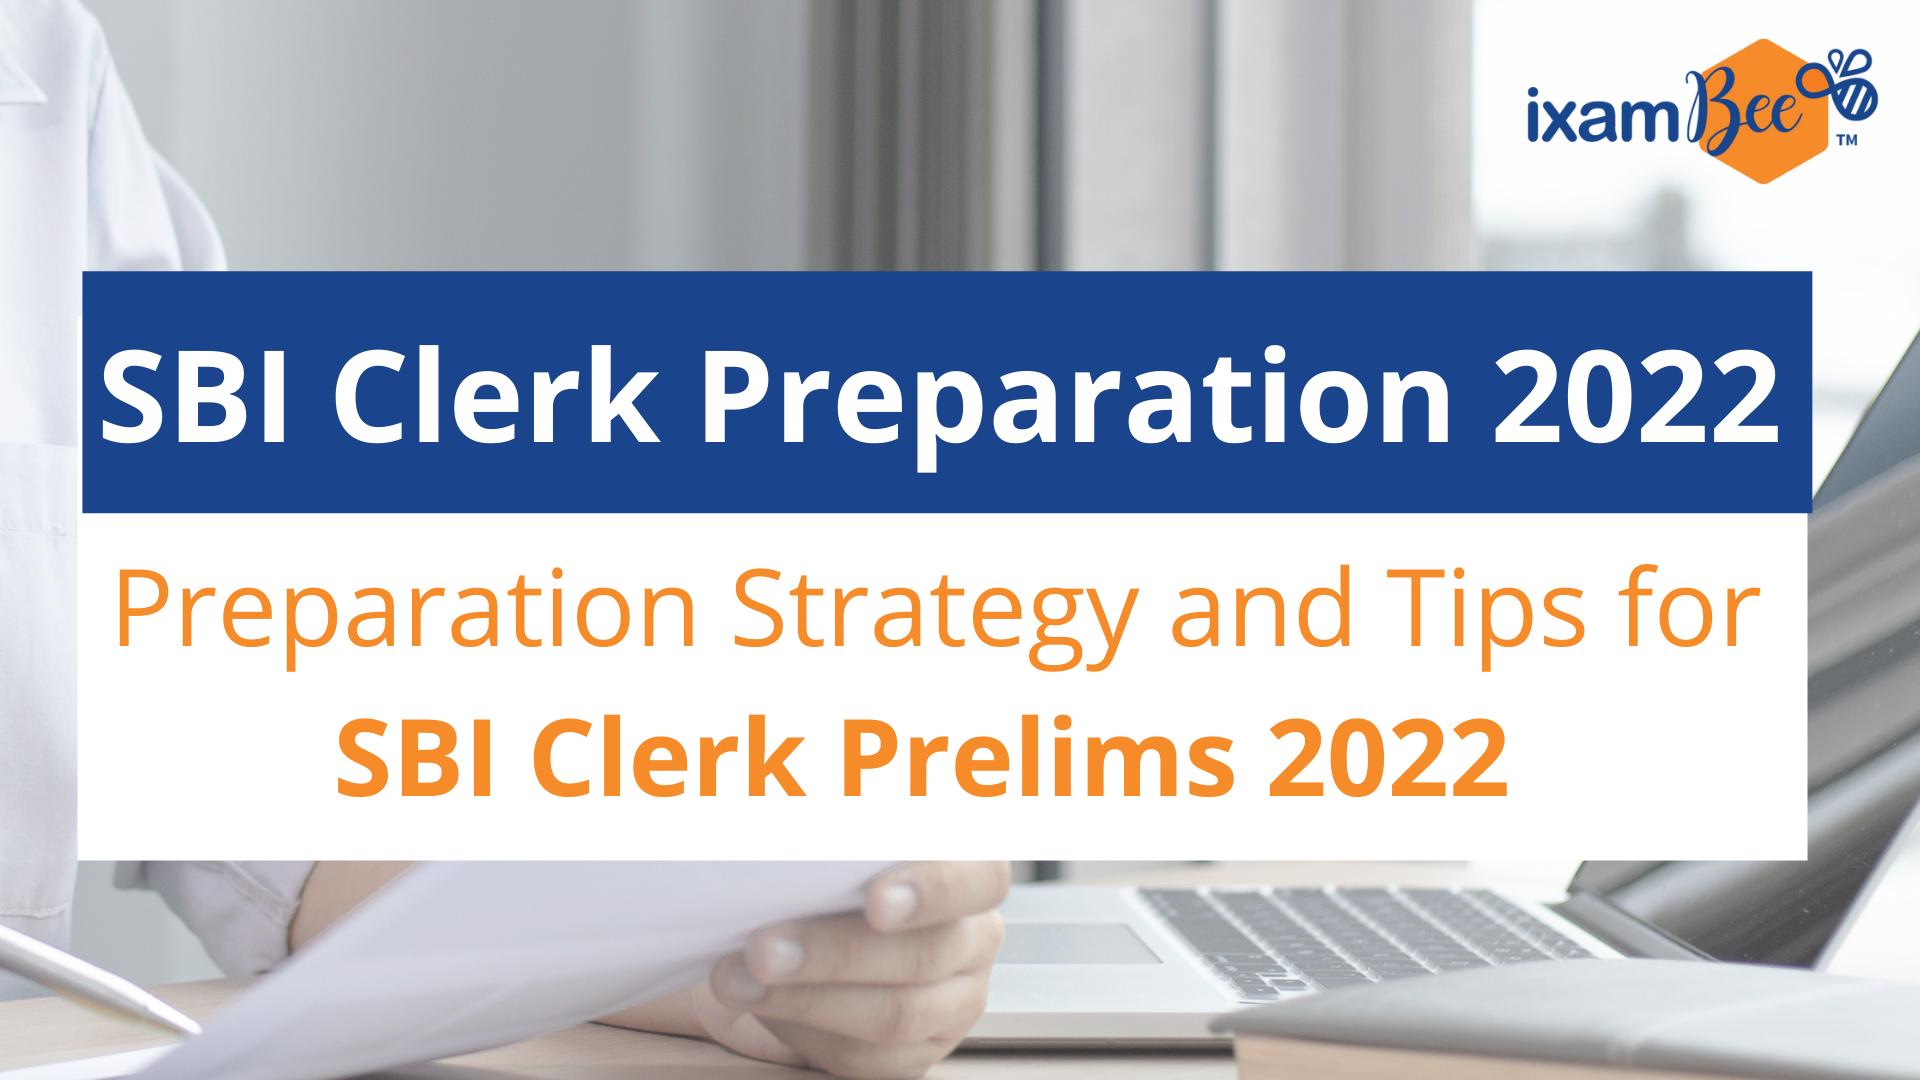 SBI Clerk Preparation 2022: Best Preparation Strategy for SBI Clerk Prelims 2022